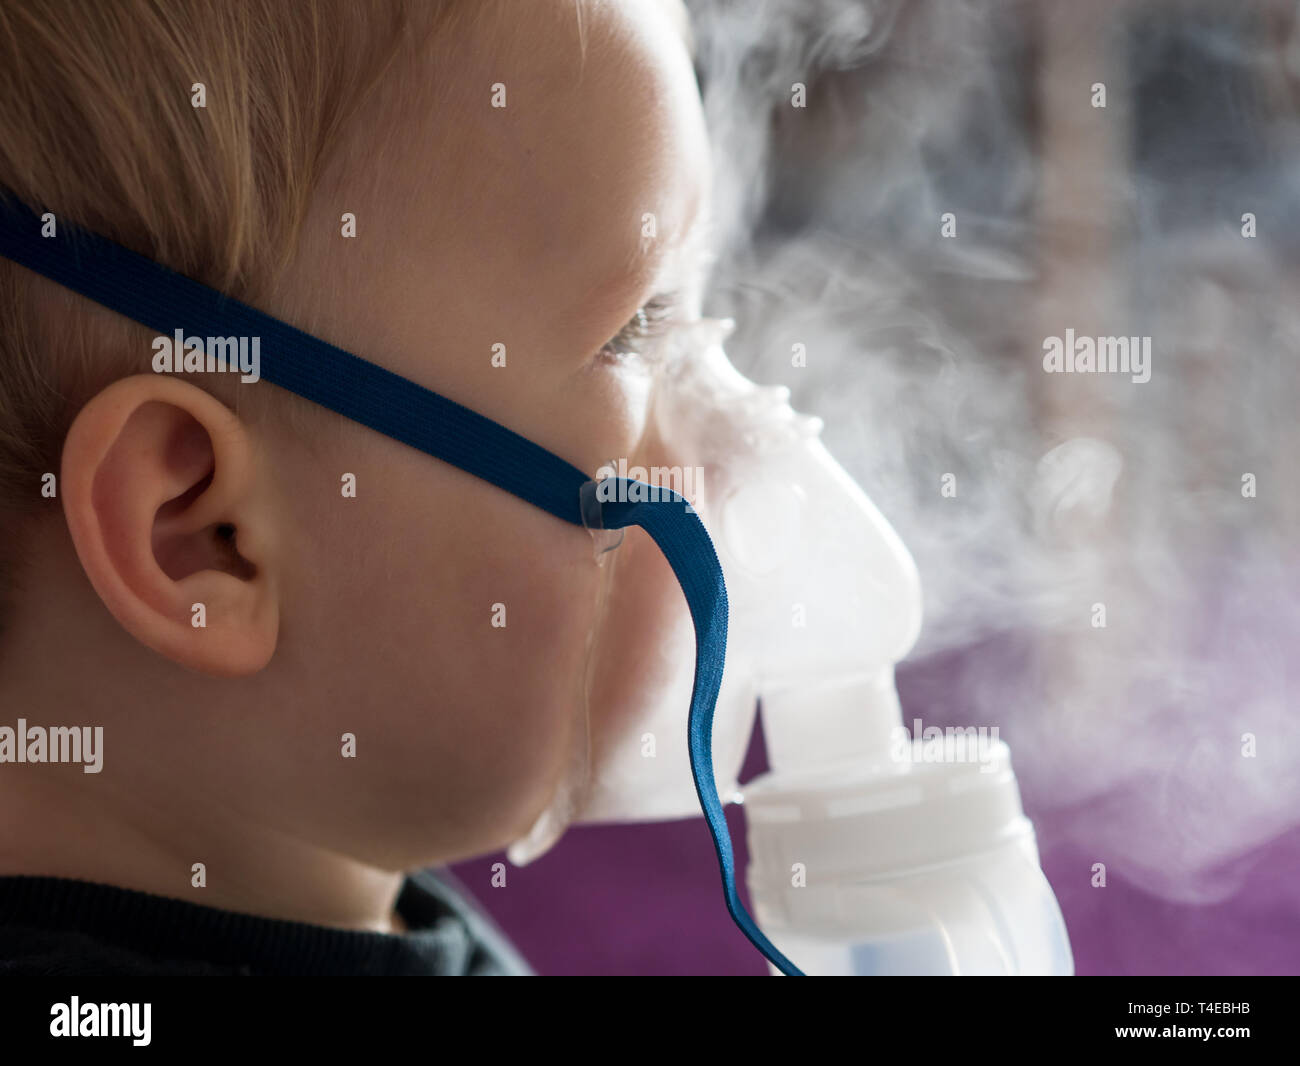 Kleines Kind inhalieren mit Sauerstoff Maske zu Hause Nahaufnahme  Stockfotografie - Alamy